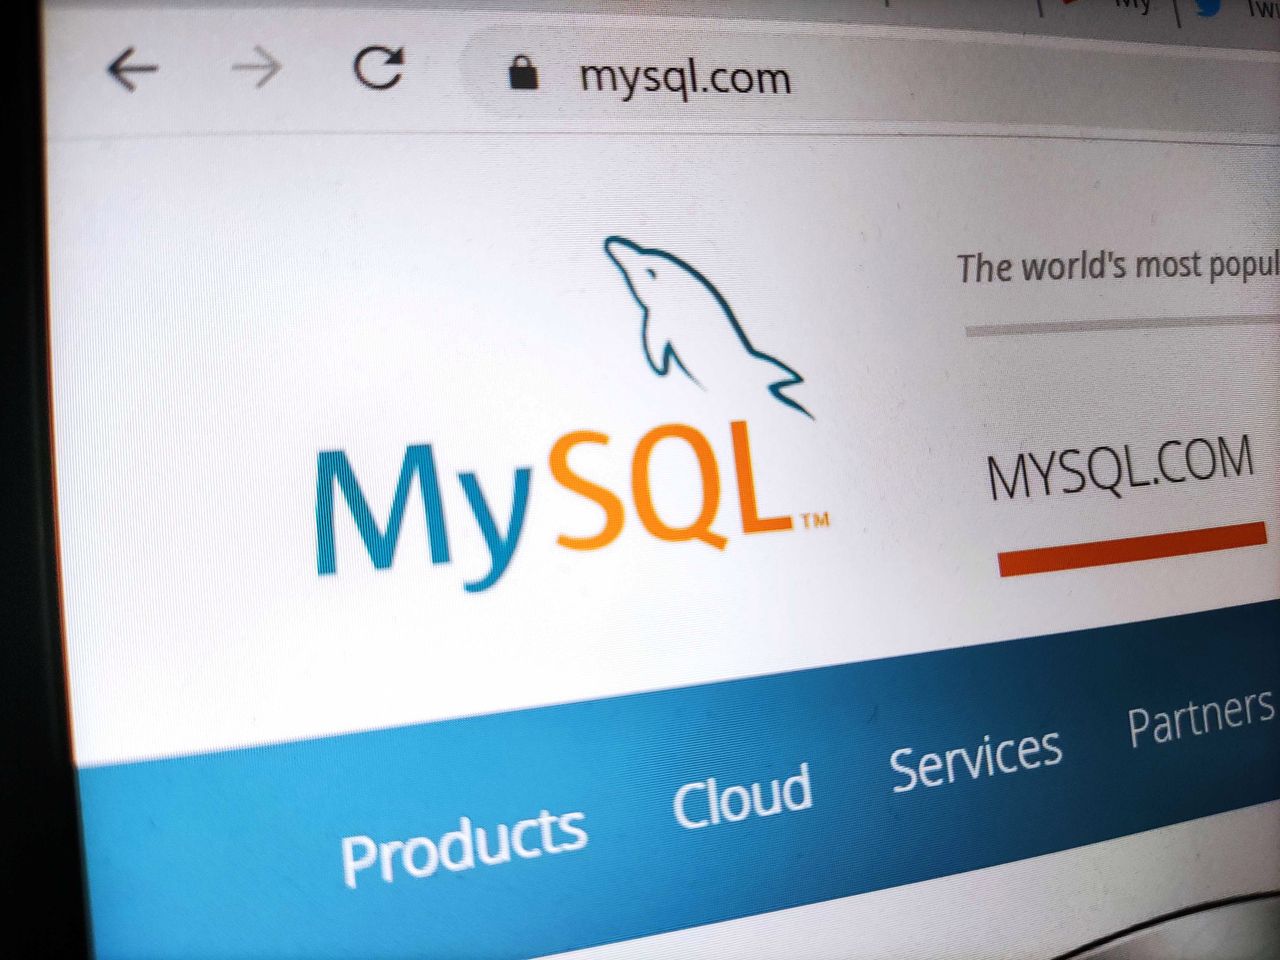 MySQL pozbywa się "master" i "slave" z kodu. Pochodzenie tych słów jest negatywne